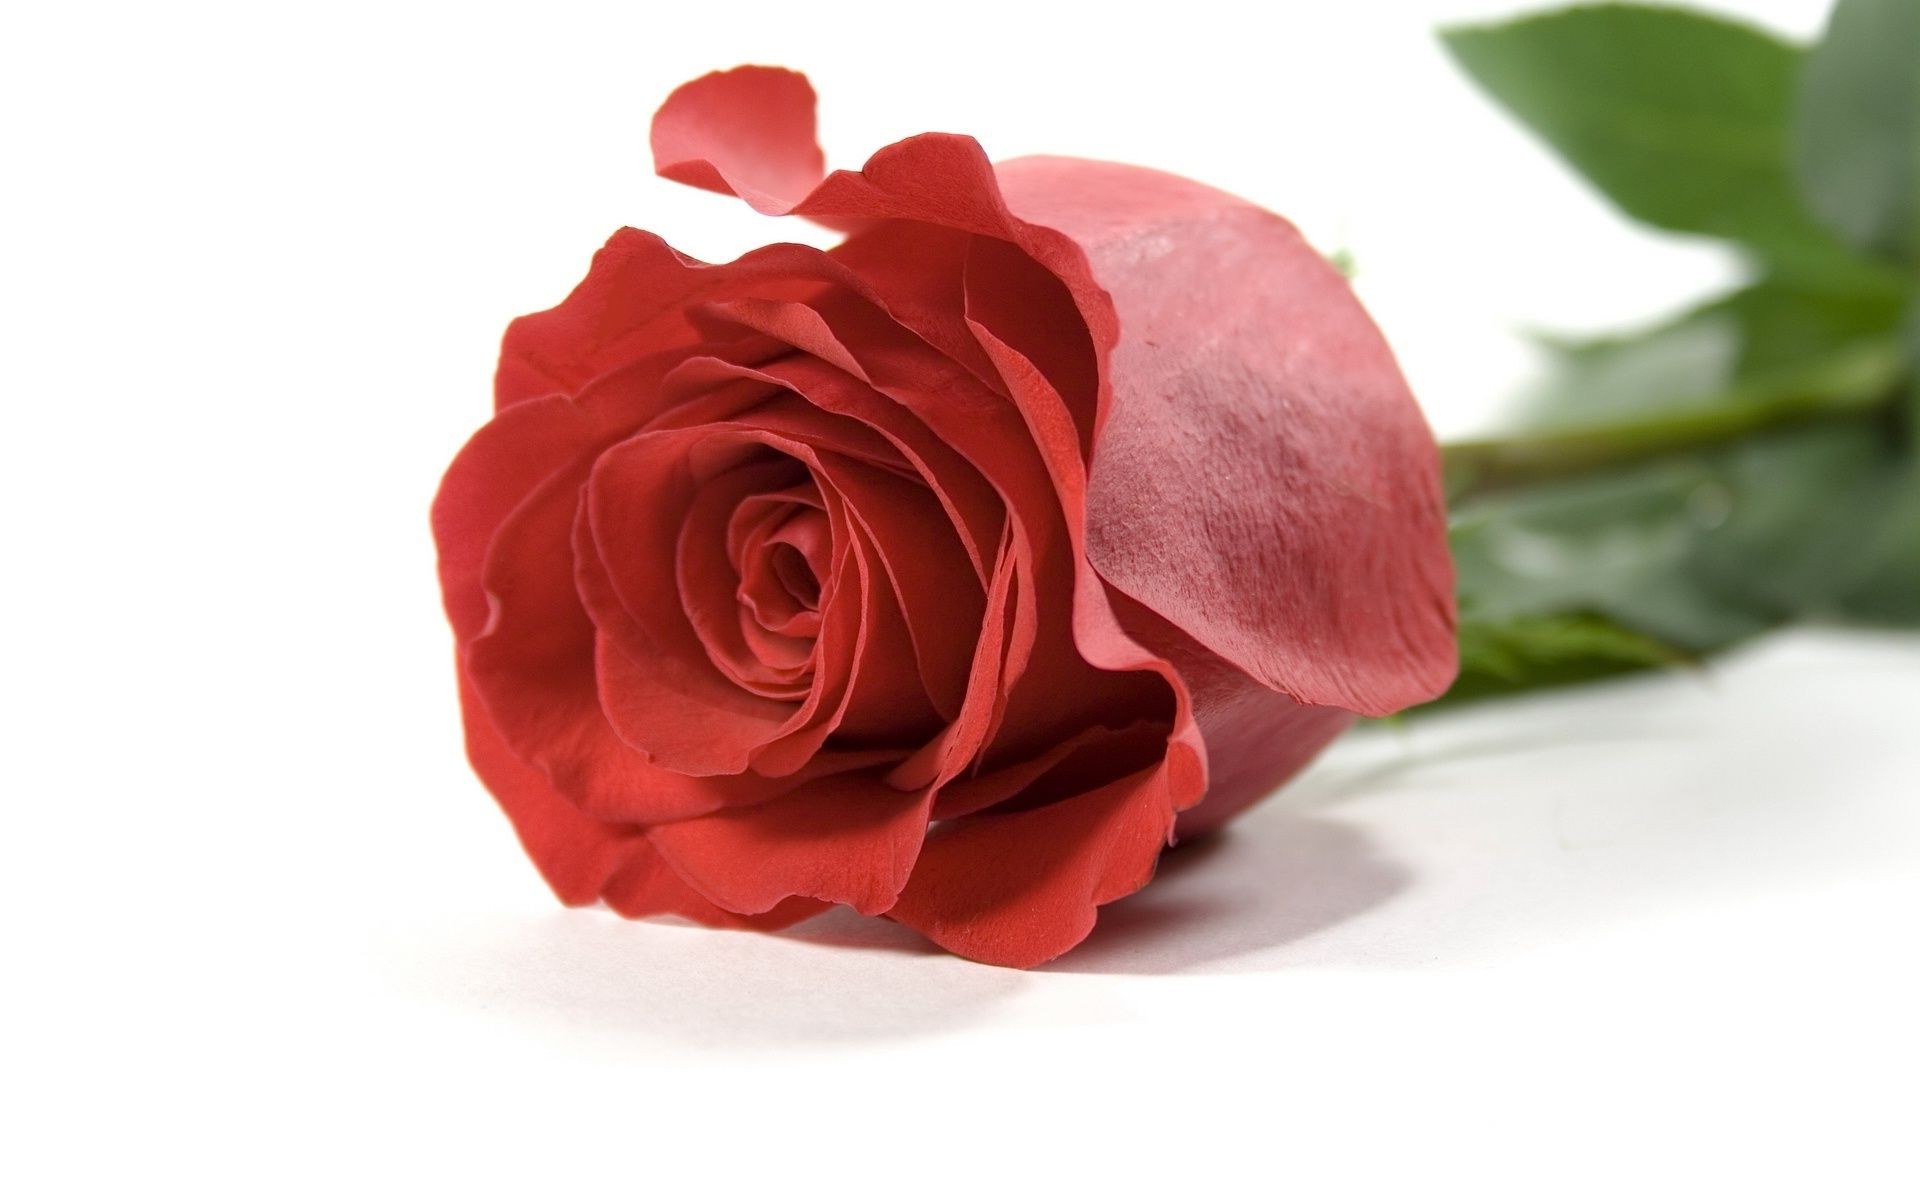 розы цветок любовь лепесток романтика подарок цветочные блюминг романтический лист природа свадьба букет флора юбилей